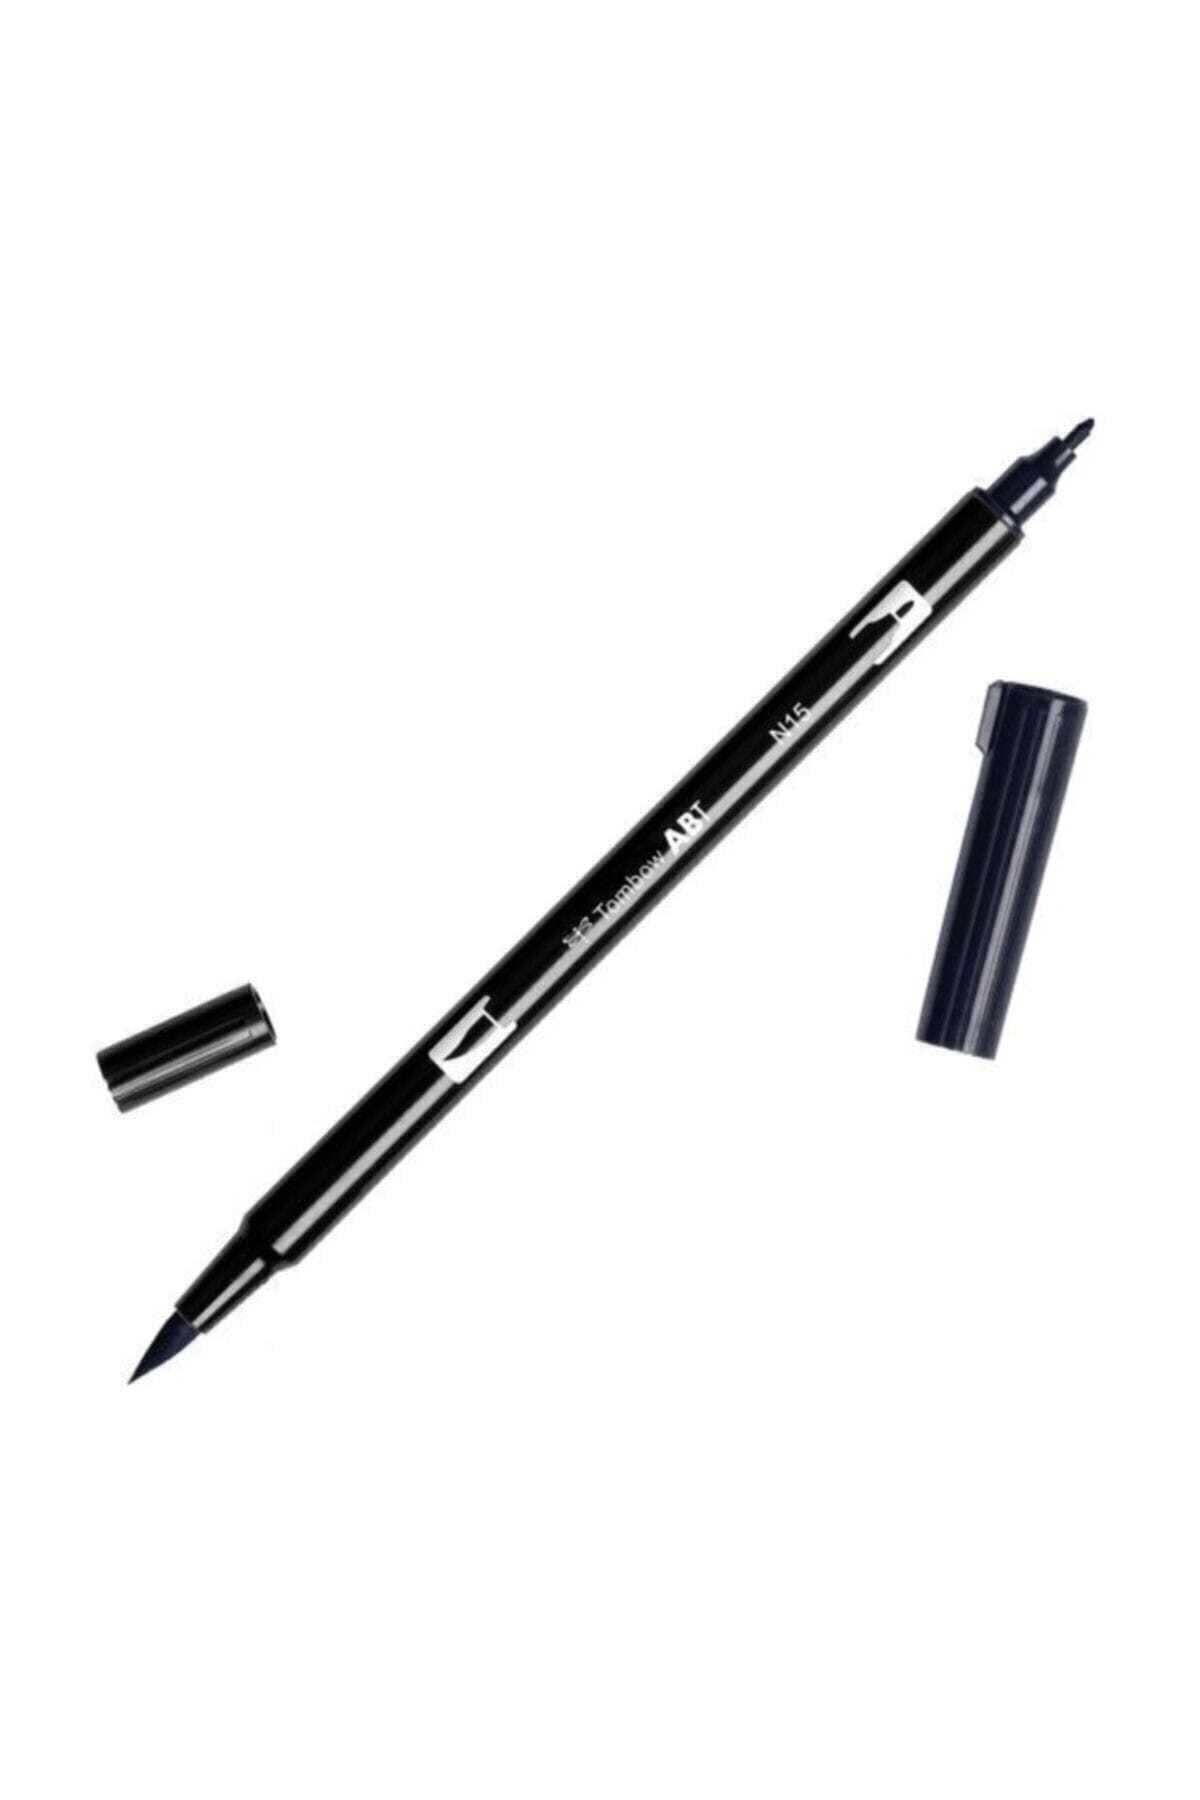 Tombow Ab-t Dual Brush Pen Grafik Kalemi Black N15